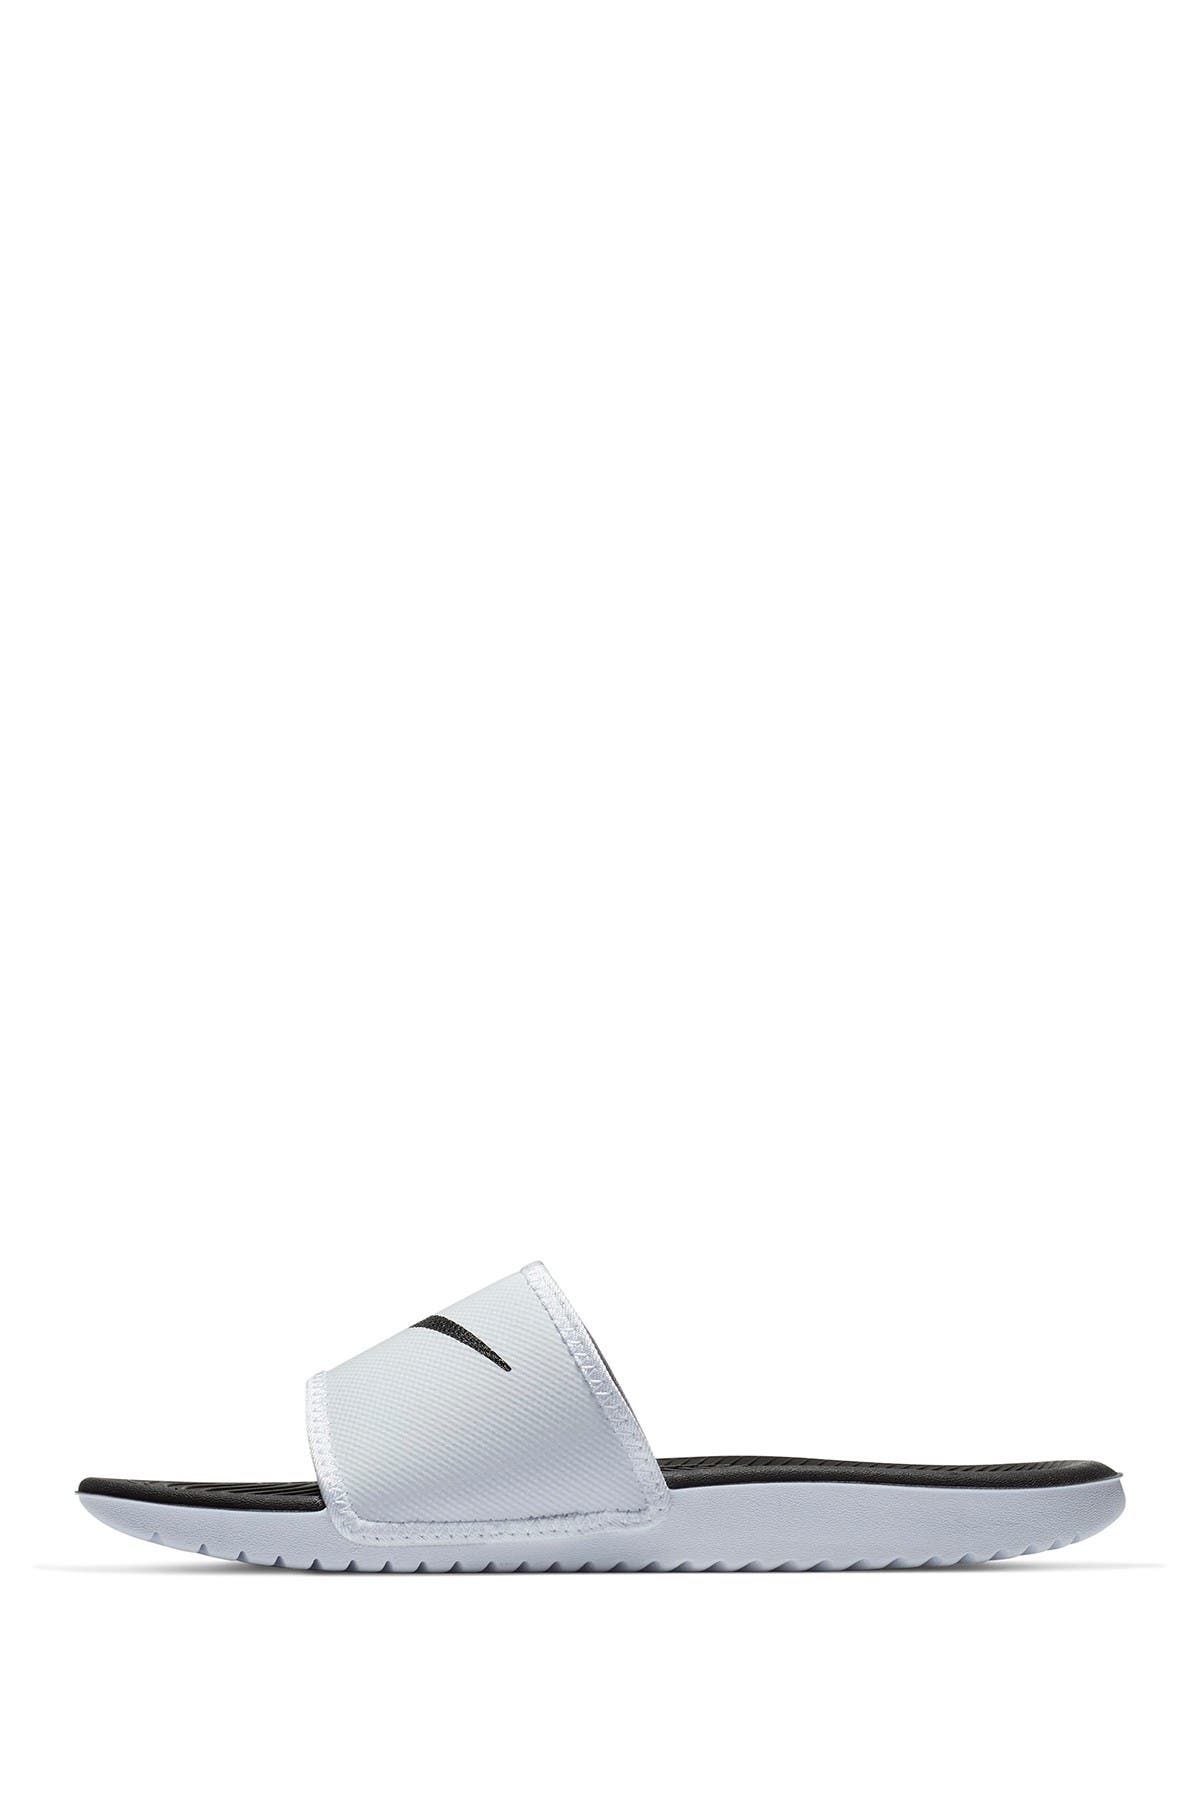 Nike | Kawa Adjustable Slide Sandal 